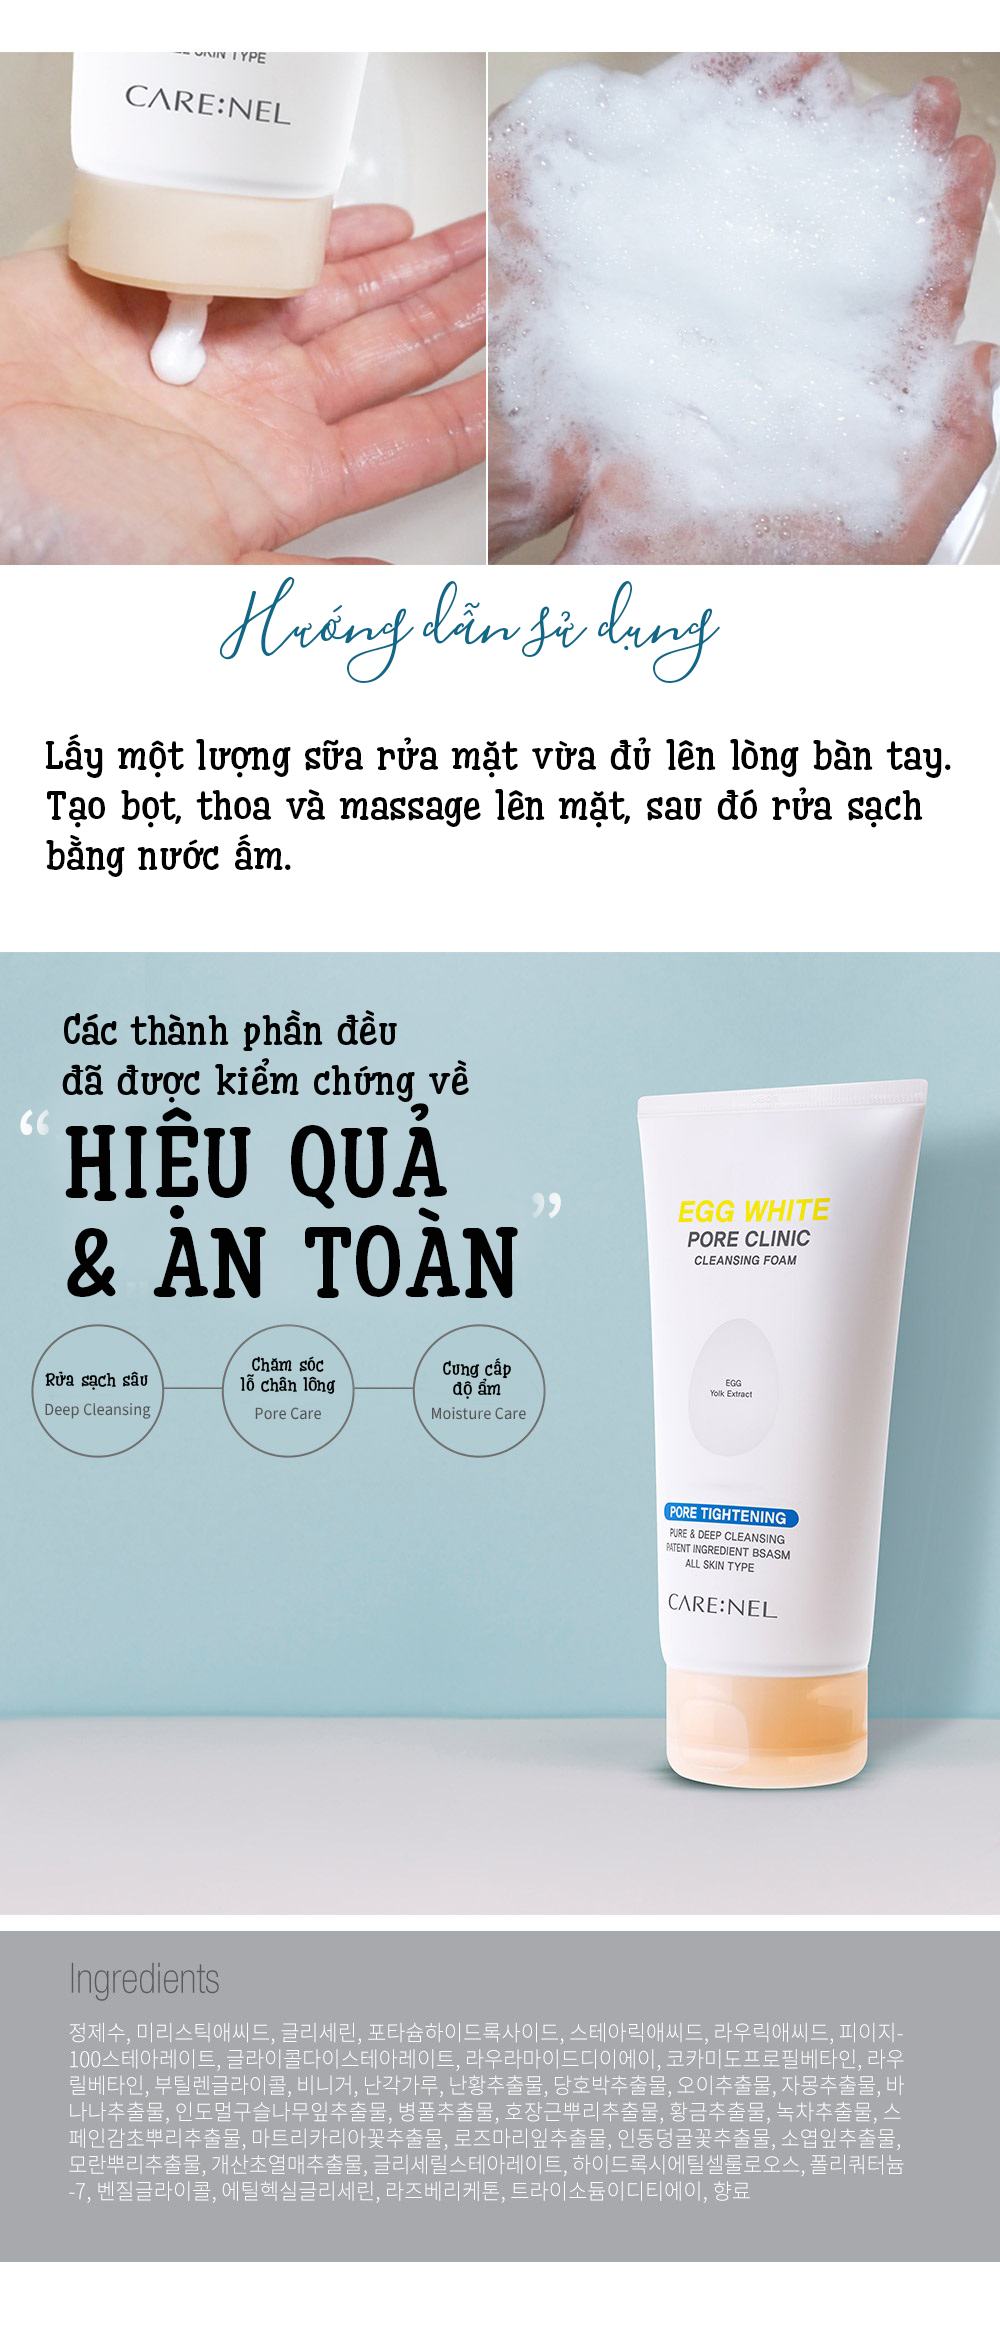 Sua Rua Mat Trung Carenel Pore Clinic Cleansing Foam (10)